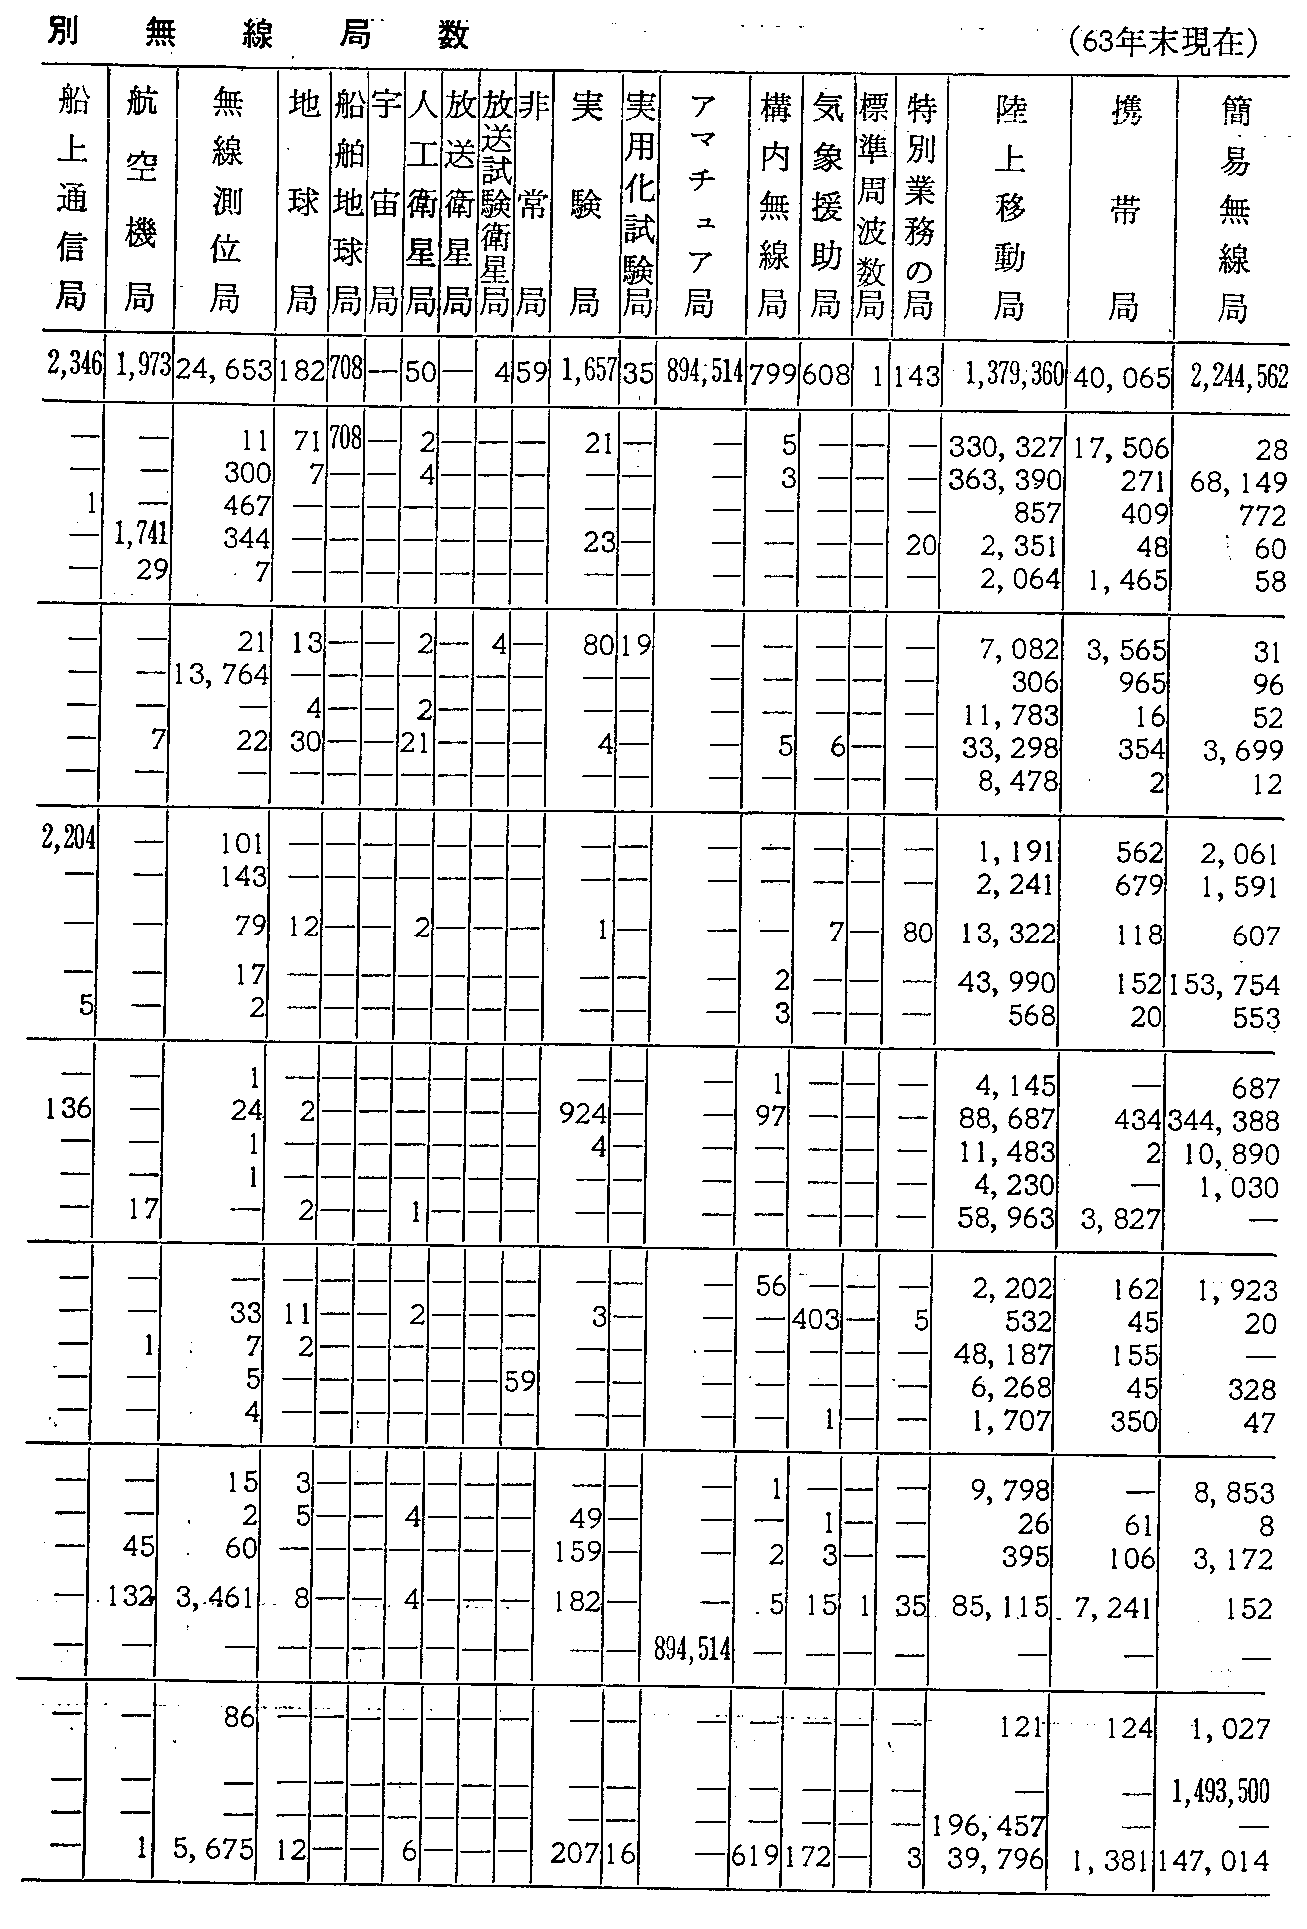 資料4-2 利用分野別無線局数(63年末現在)(2)